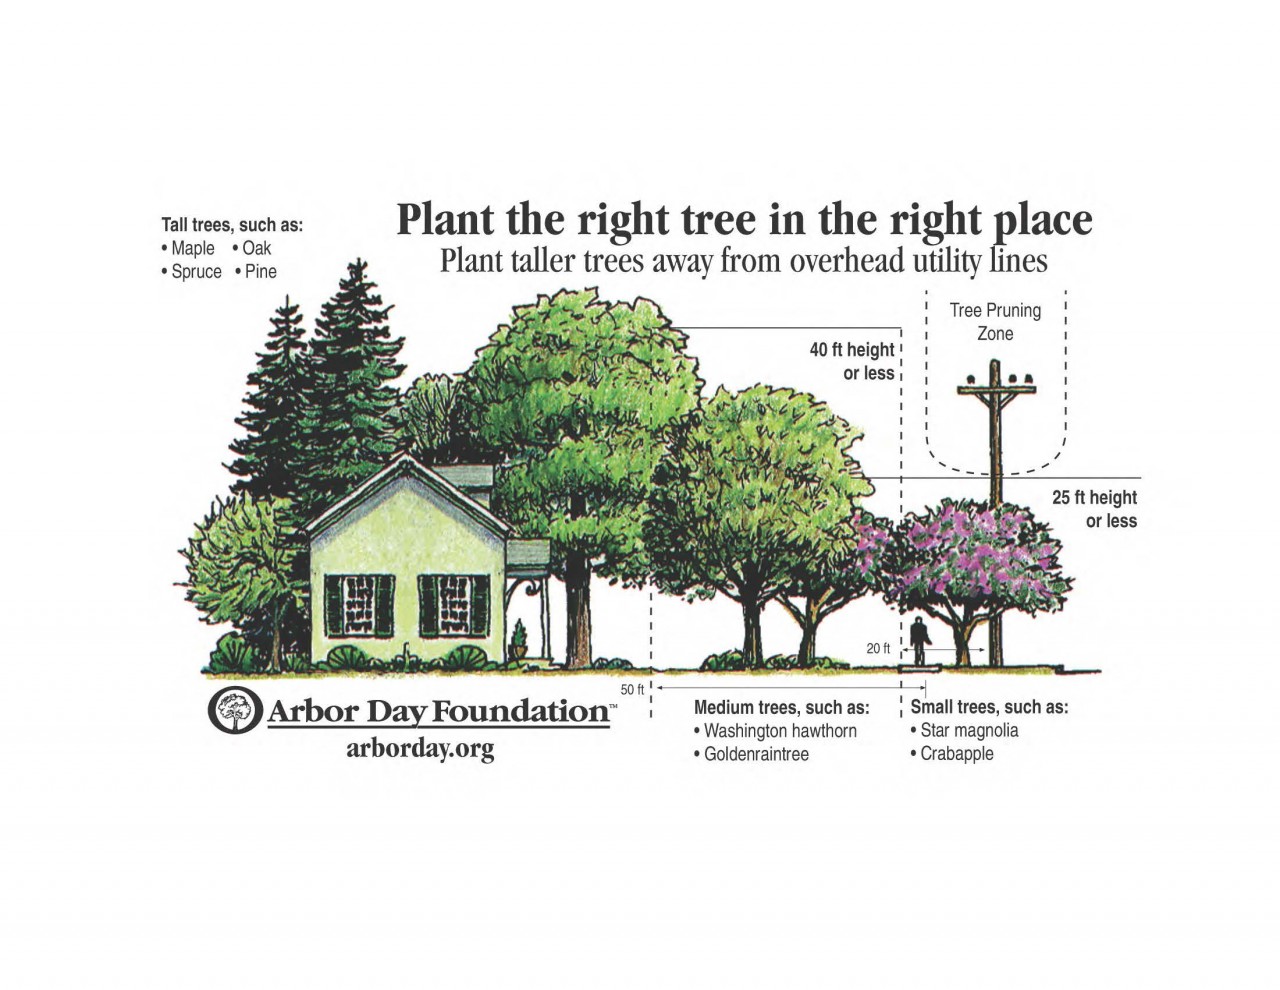 Arborist Services